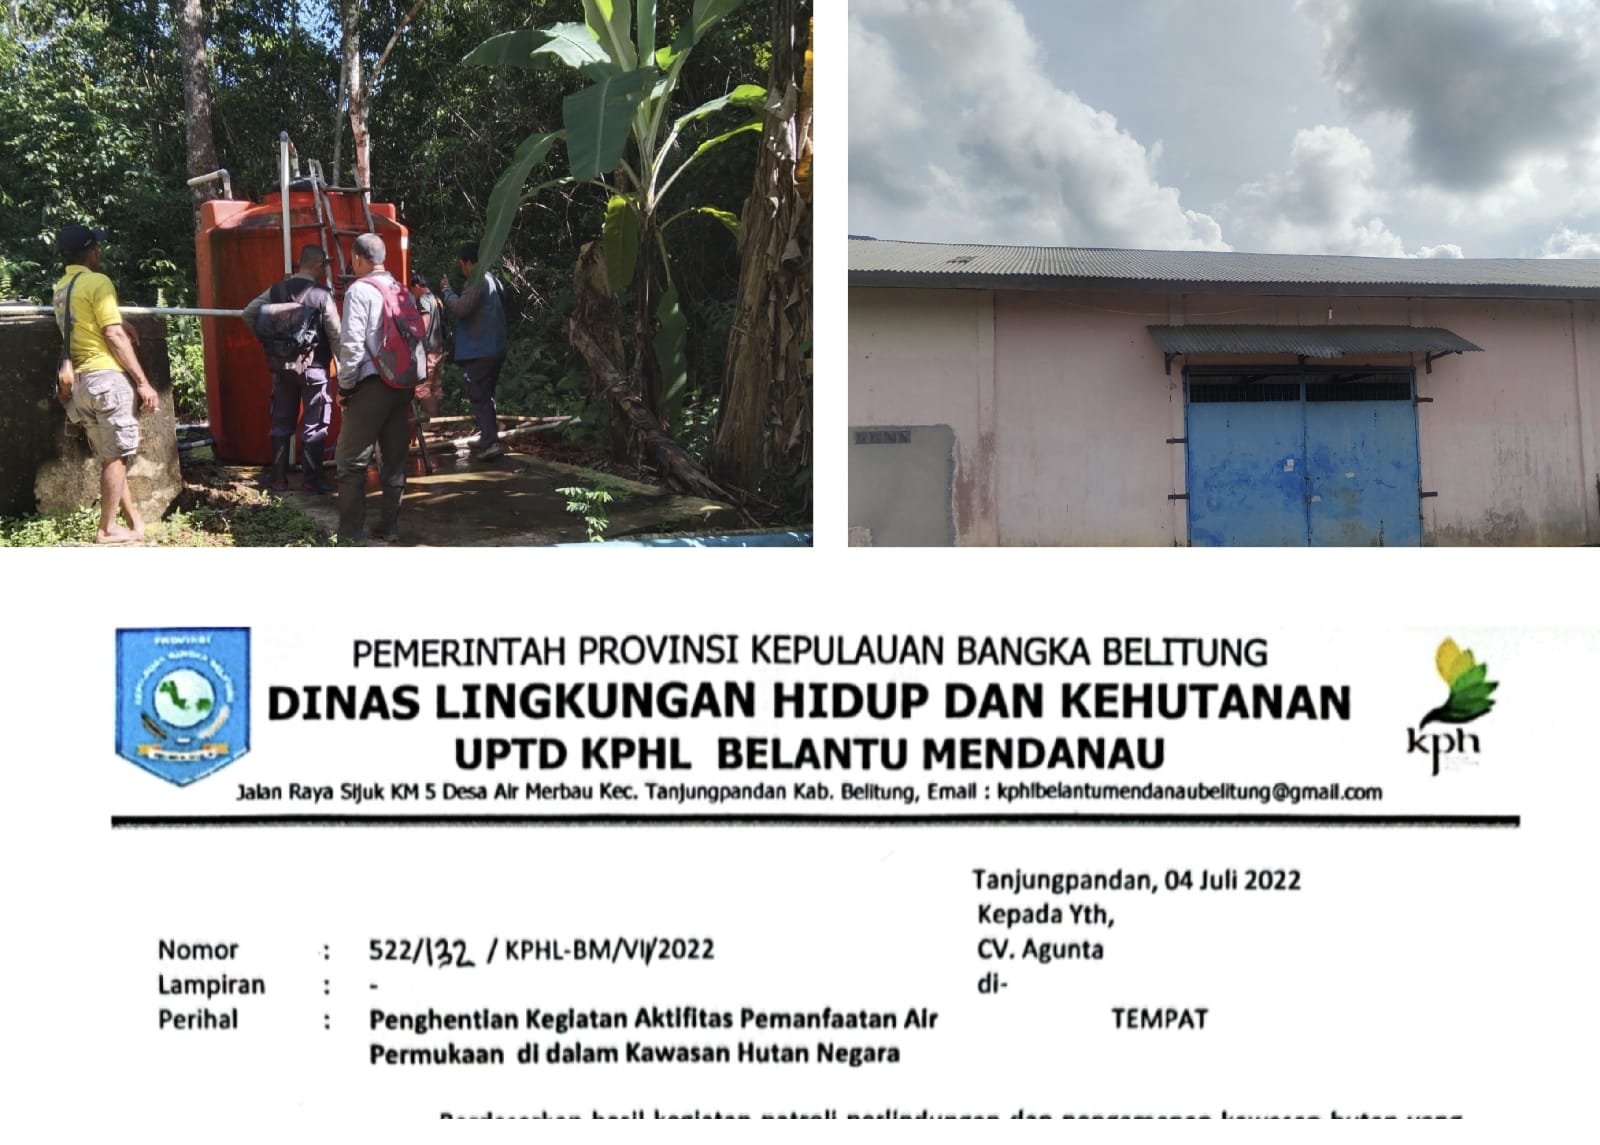 Soal Kasus Produsen Air Kemasan CV. Agunta, UPTD KPHL Belantu Mendanau Provinsi Kepulauan Bangka Belitung Angkat bicara